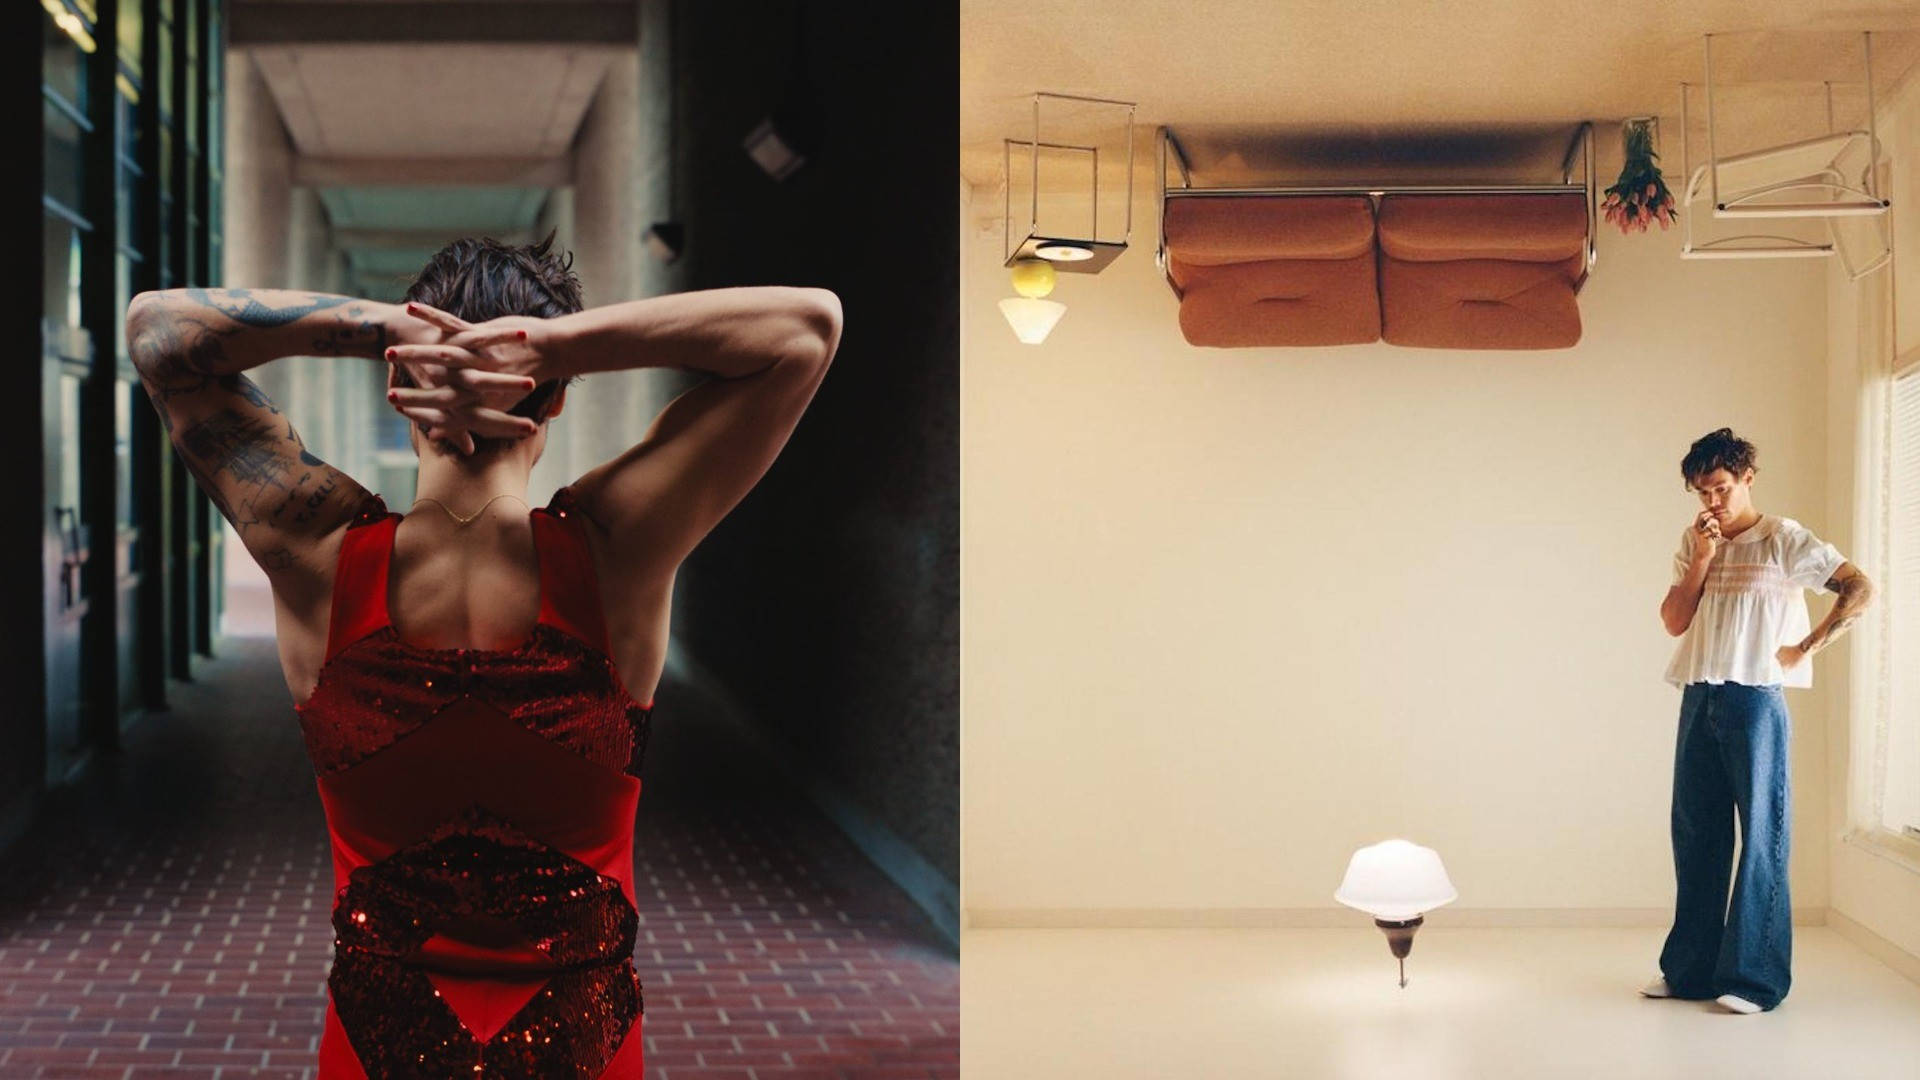 Zweibilder Einer Frau In Einem Raum Mit Einer Lampe Wallpaper